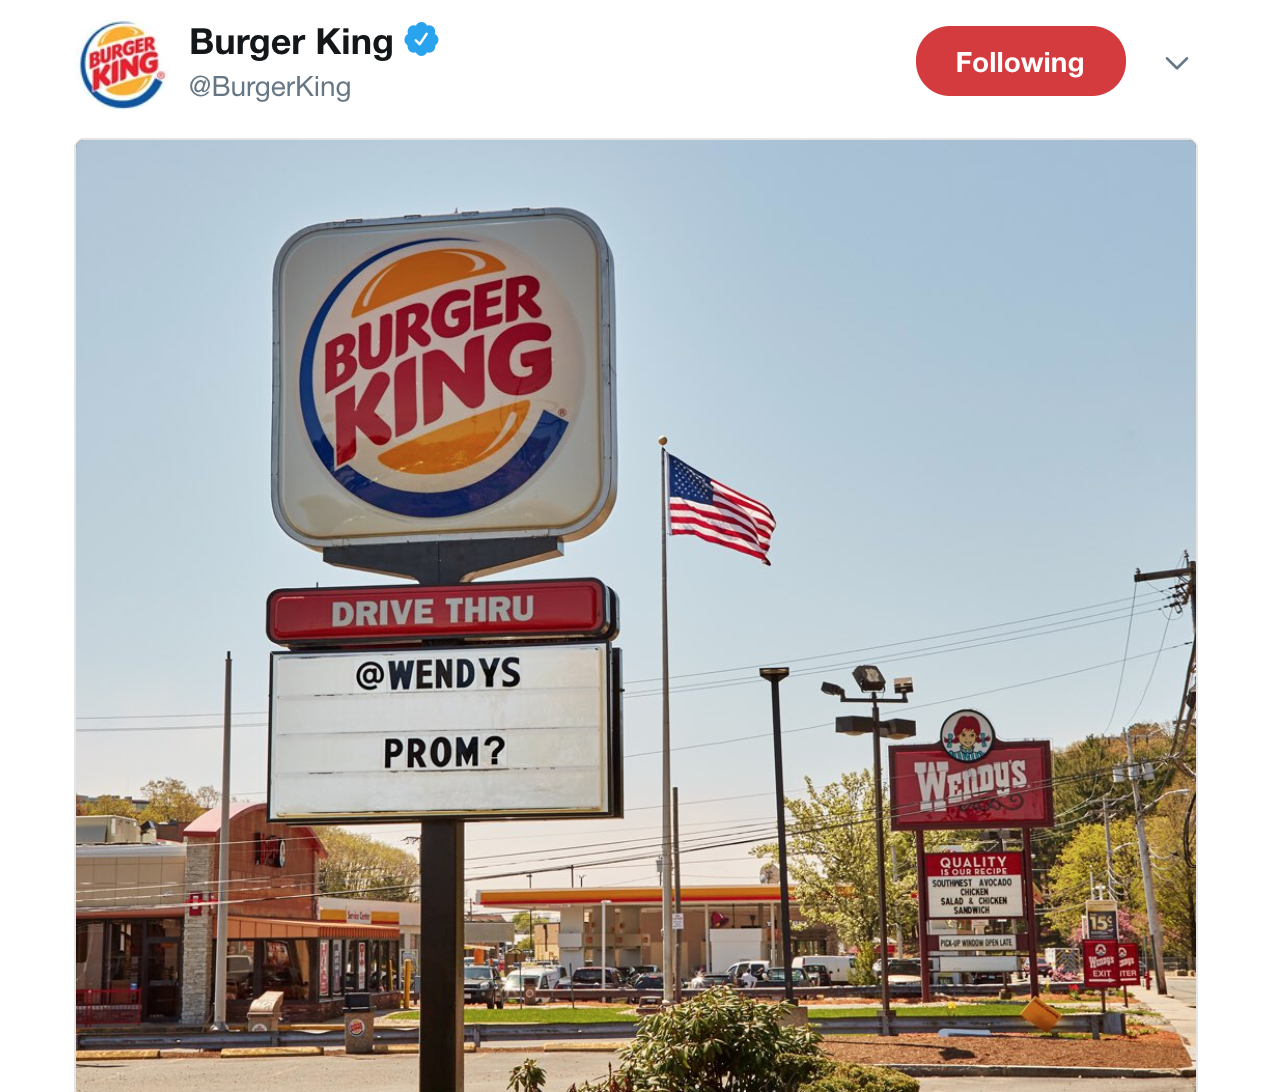 Burger King Social Media Marketing